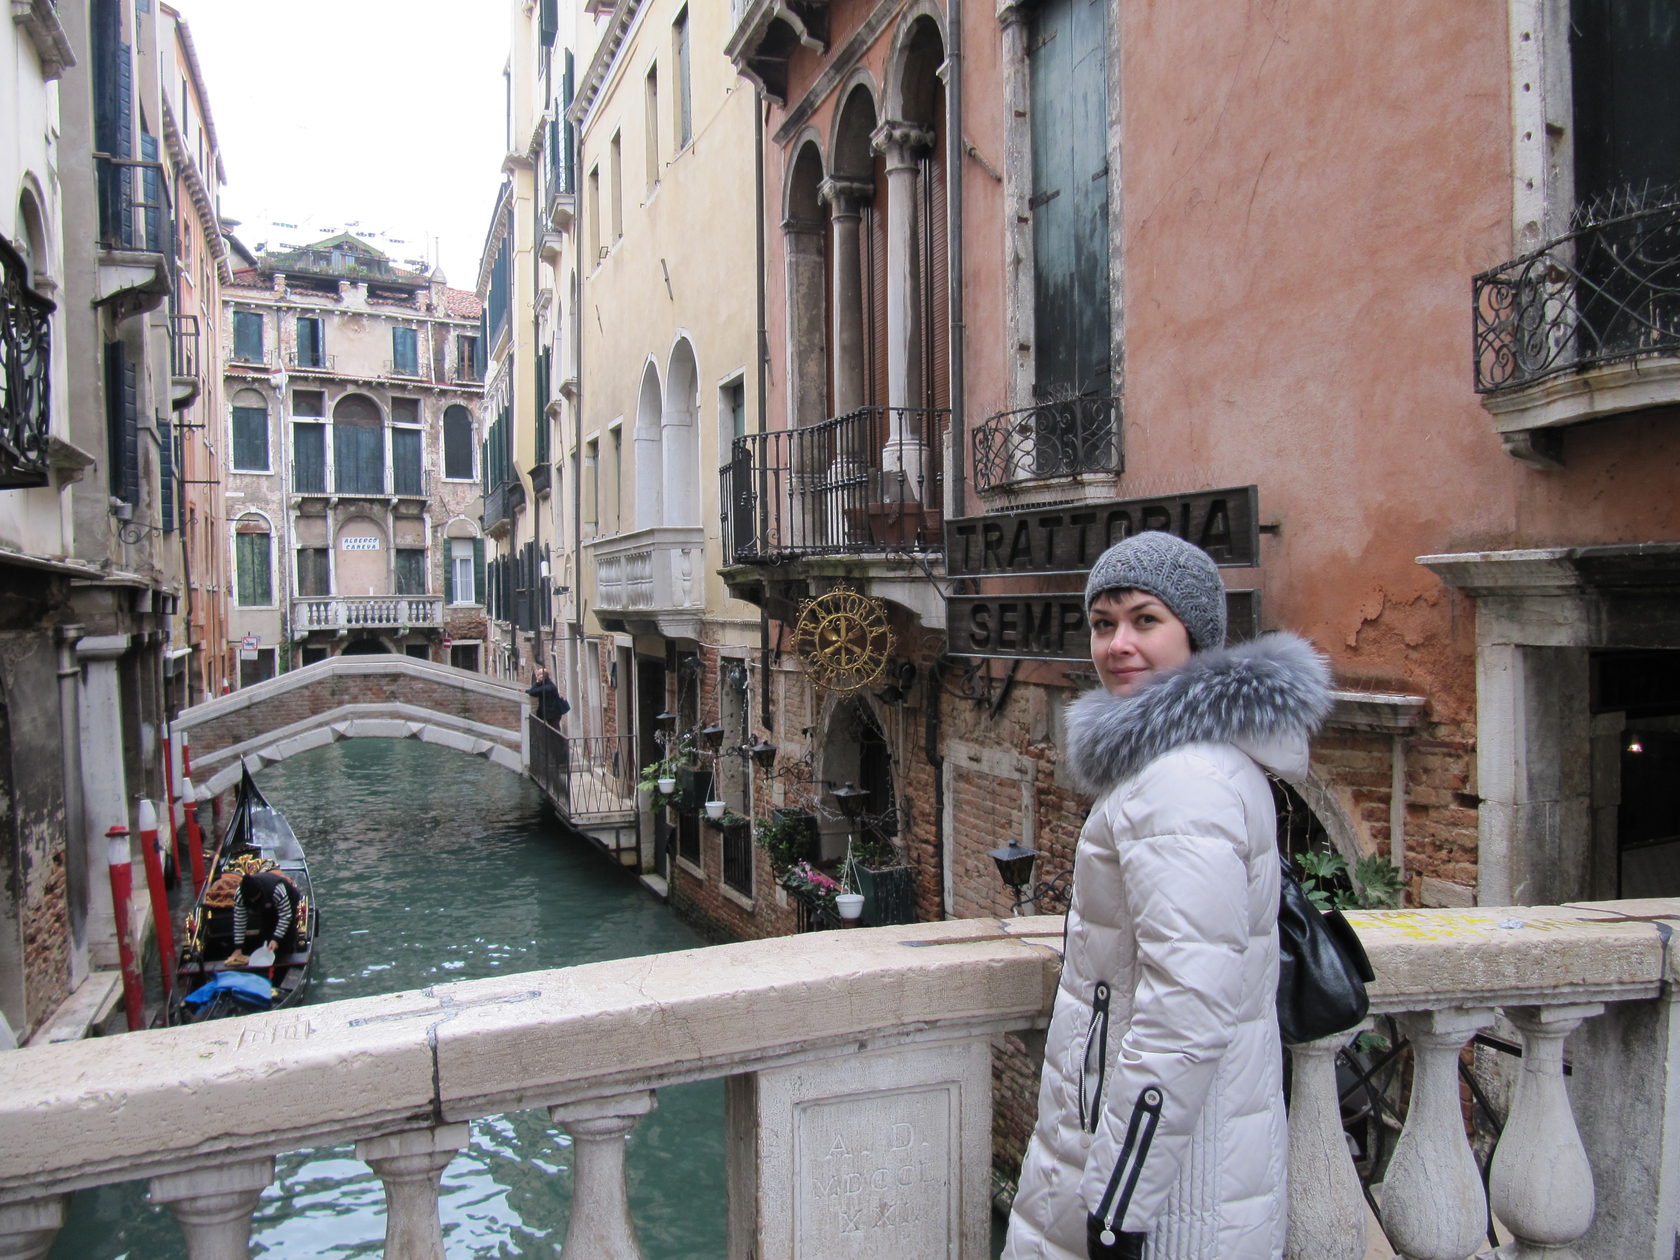 венеция зимой